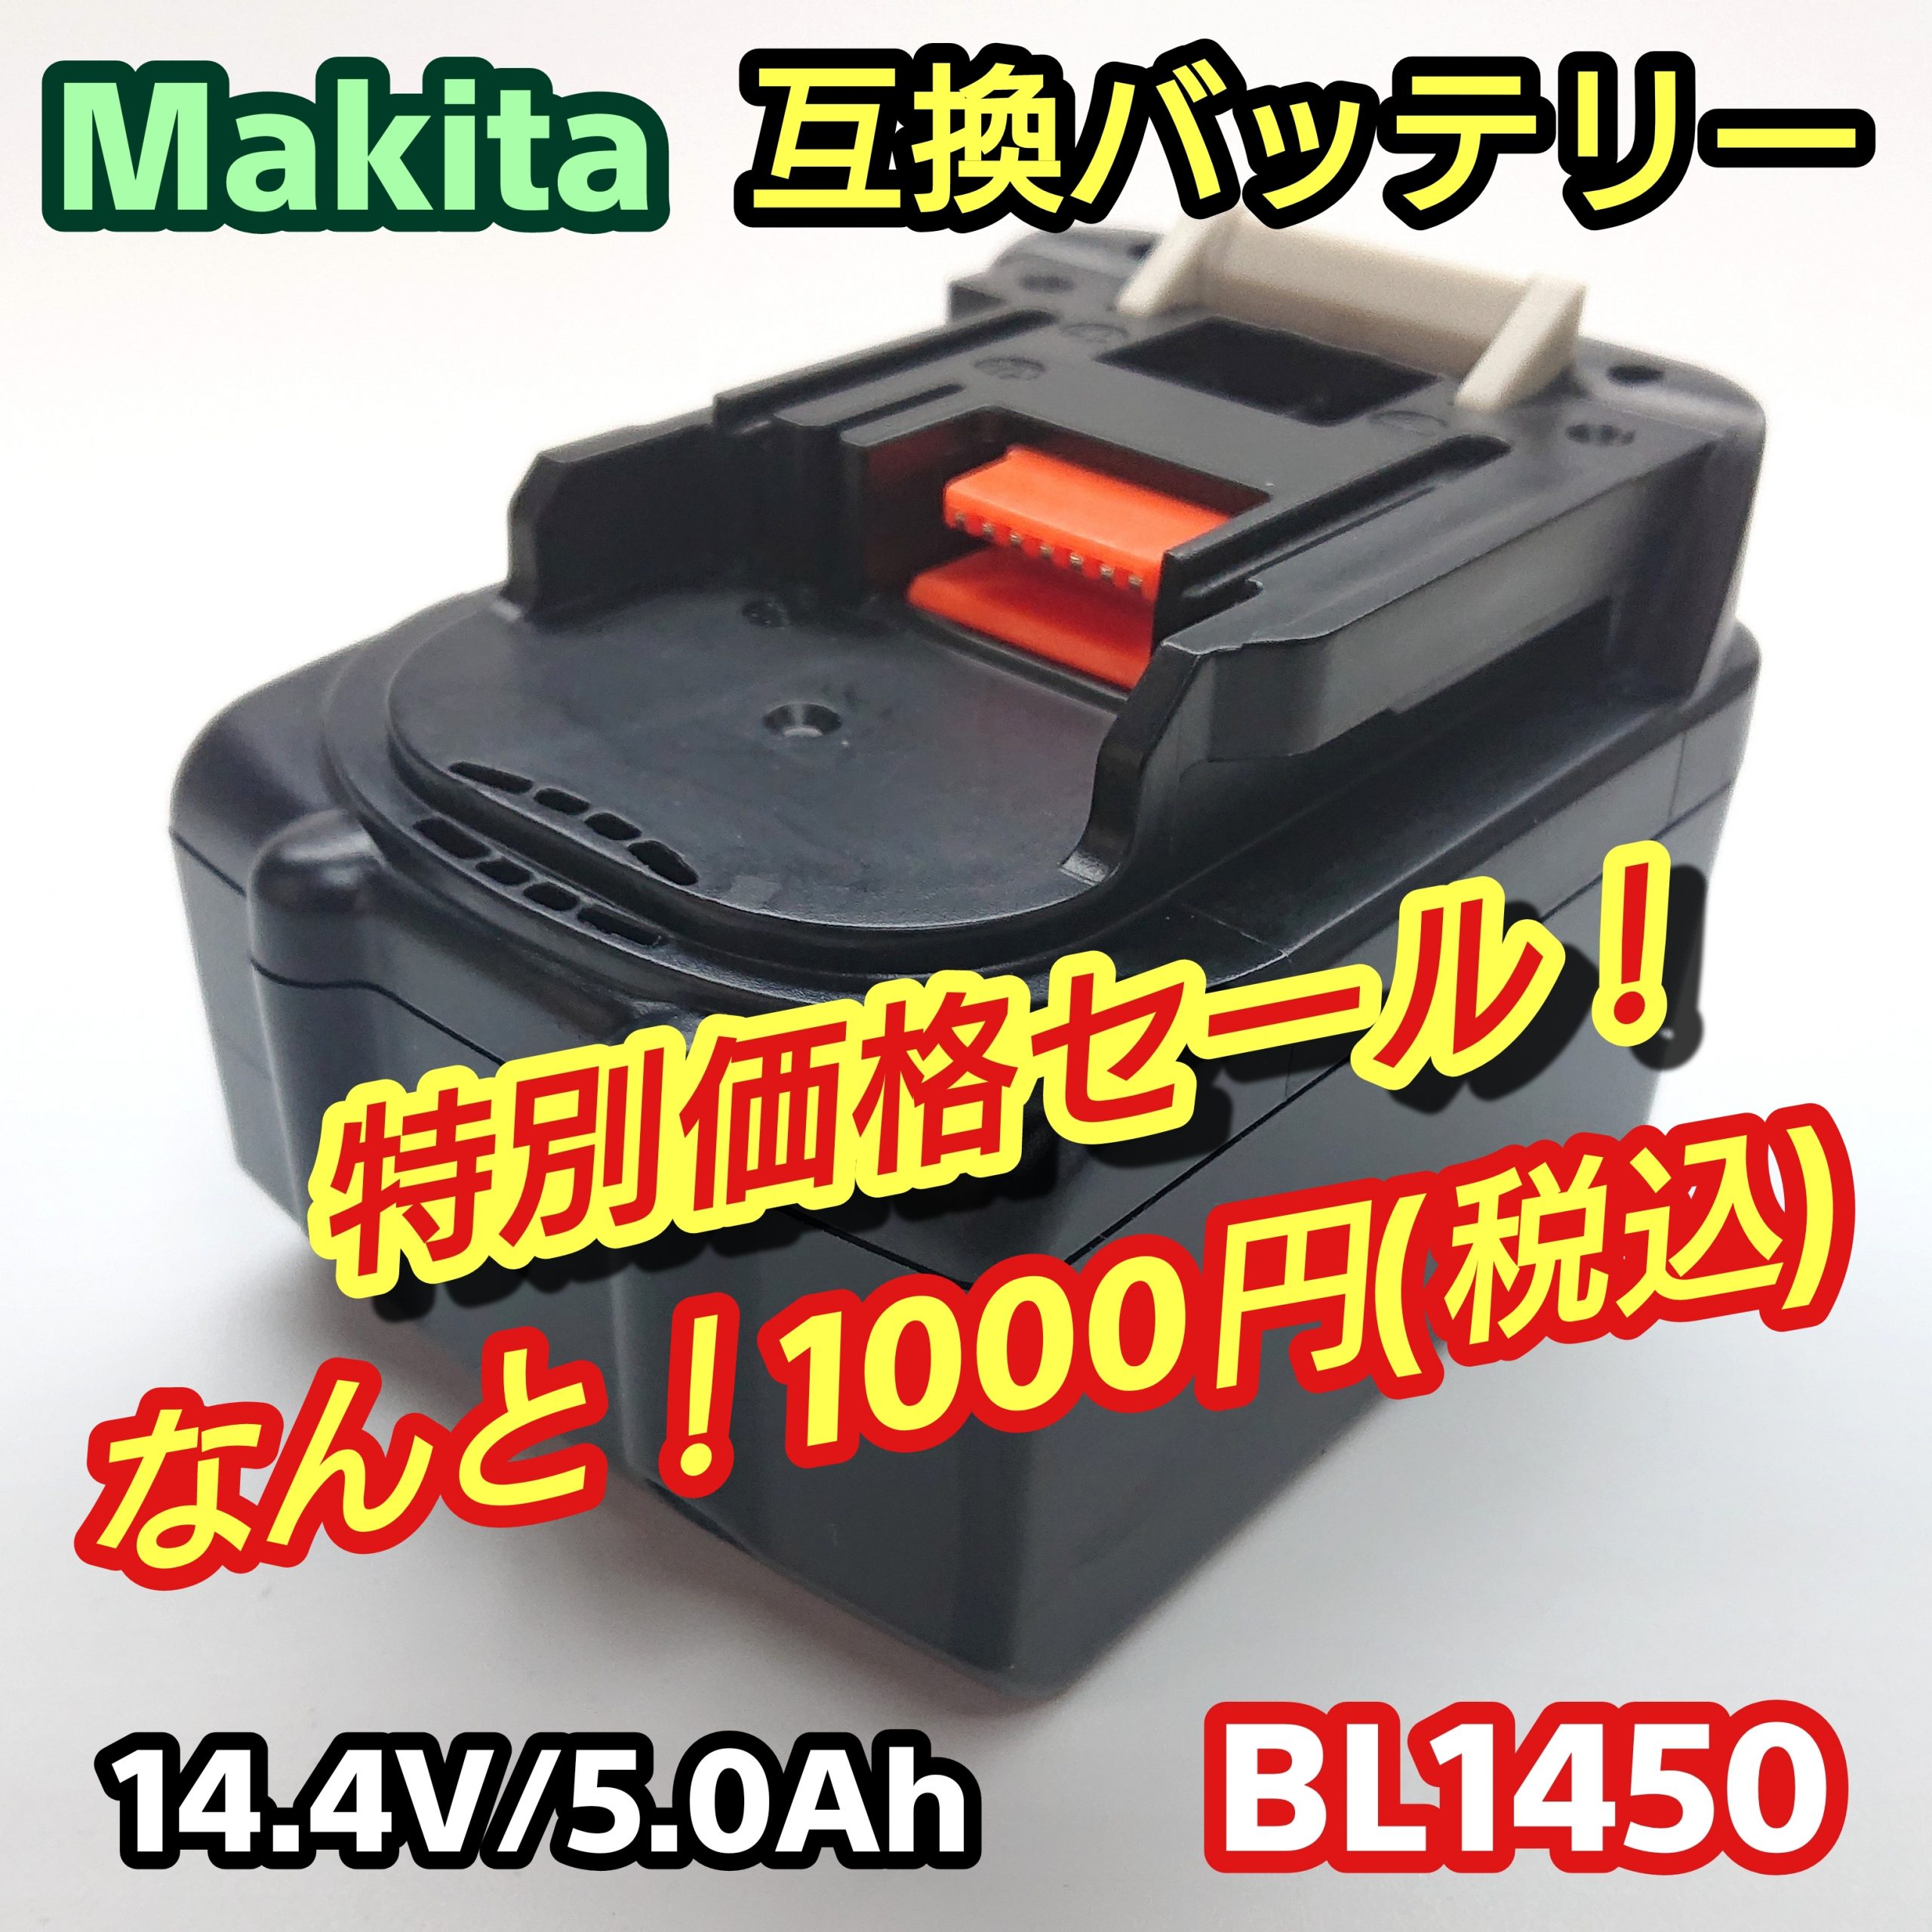 マキタ BL1450 セール